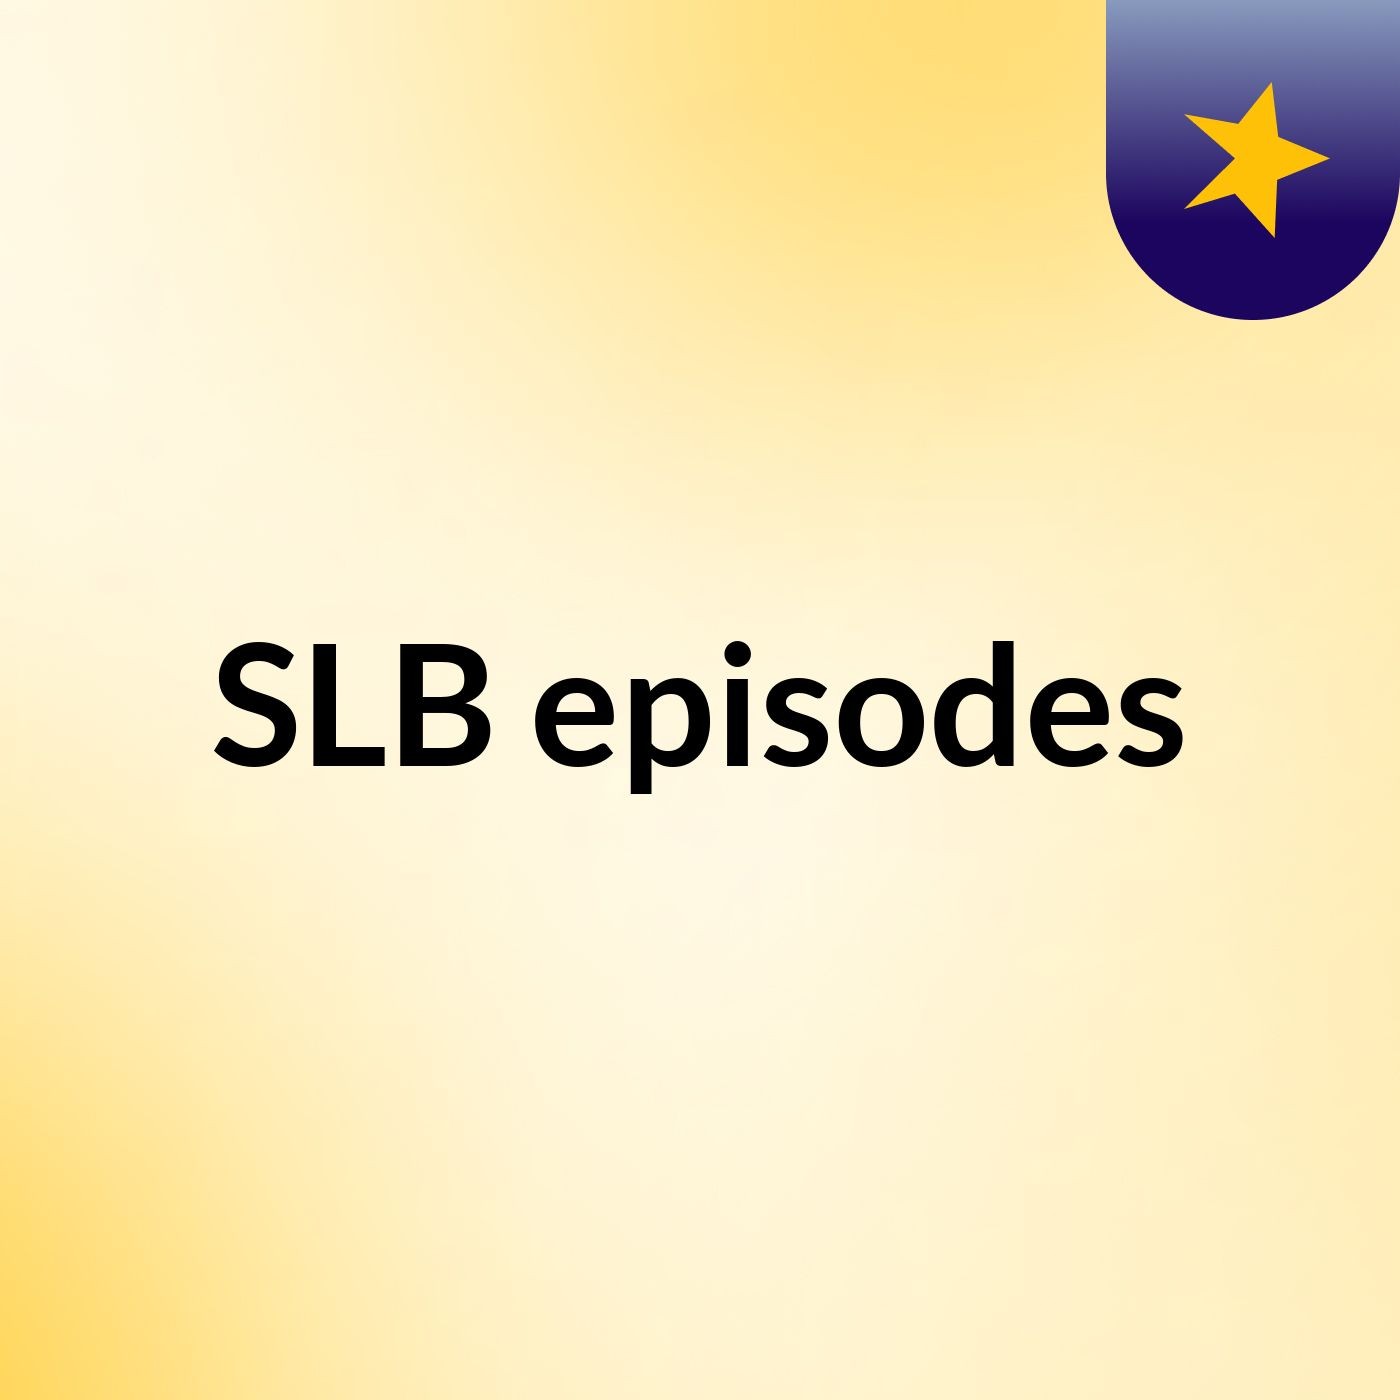 SLB episodes